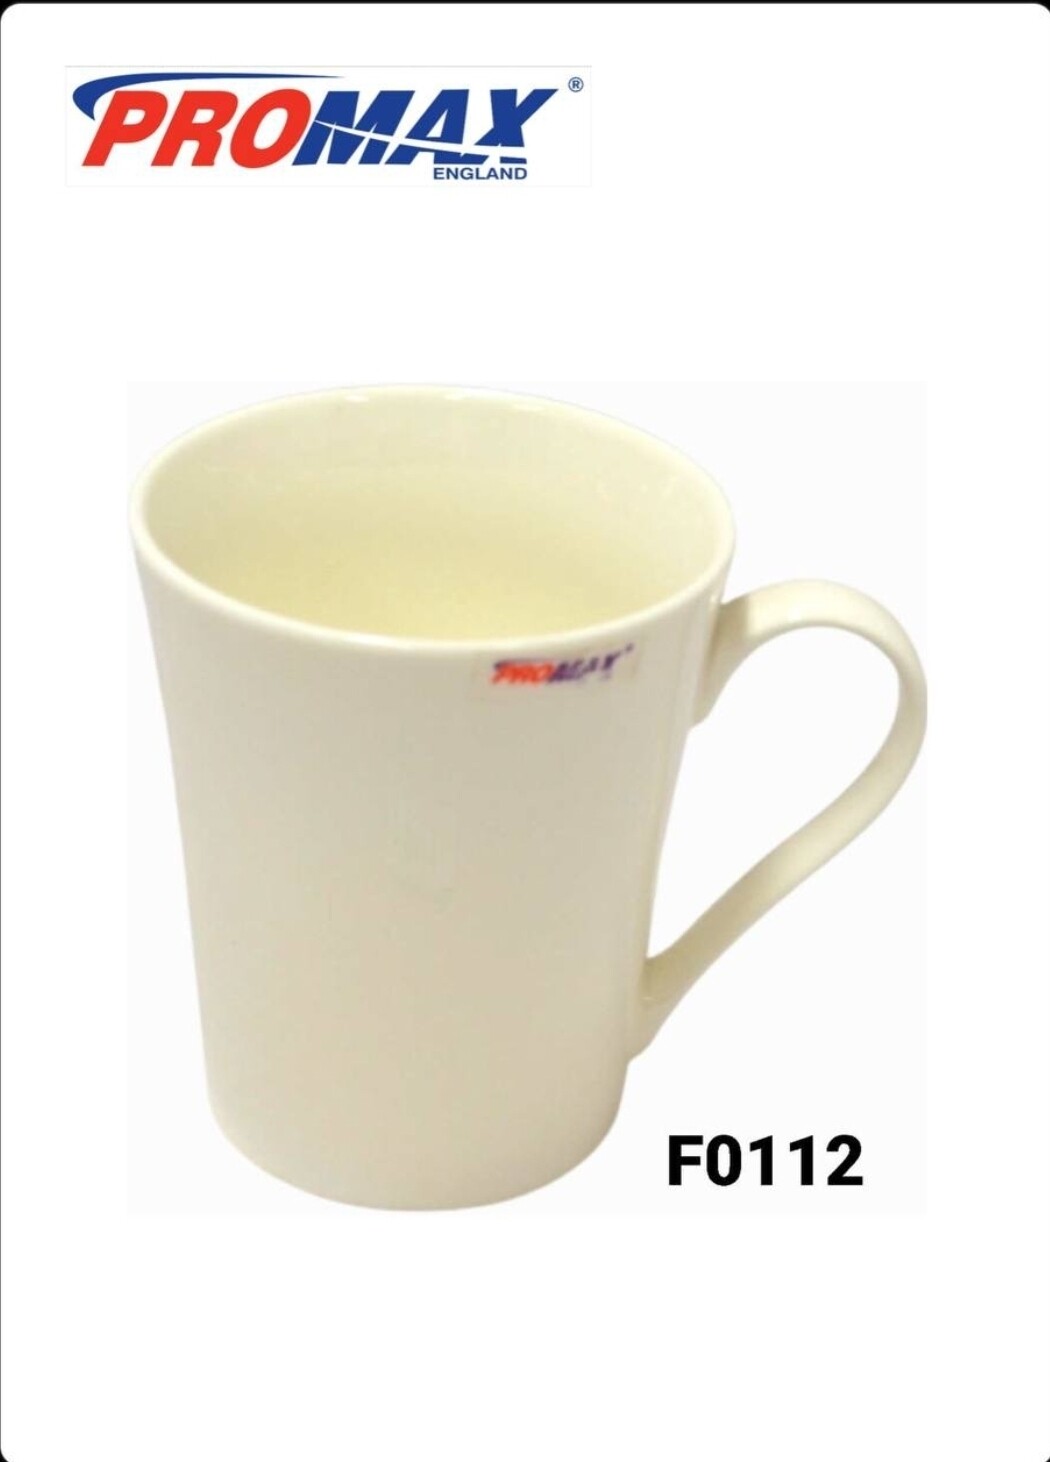 Promax ceramic white mug F0112